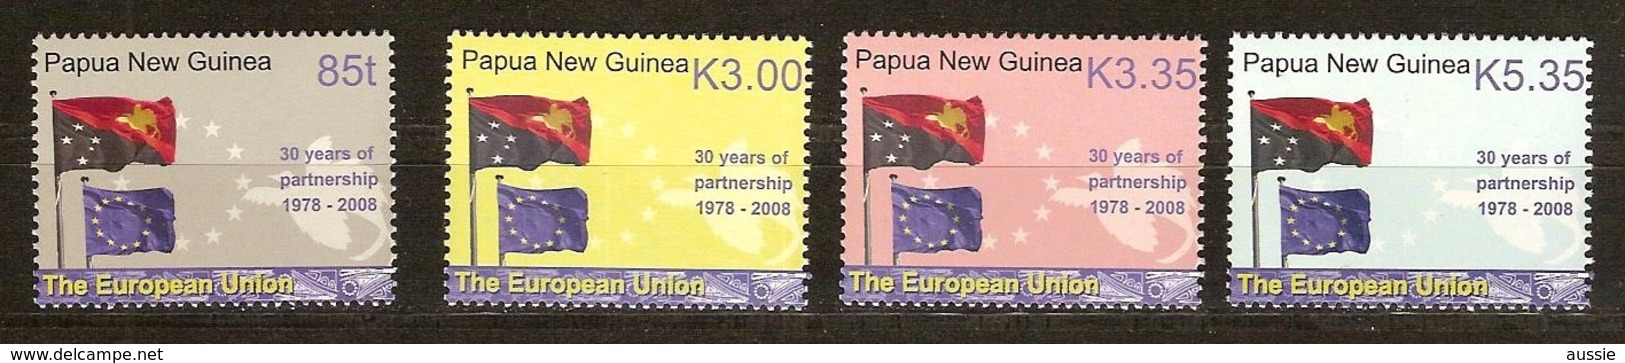 Papouasie Papua New Guinea 2008 Yvertn° 1215-1218 *** MNH Cote 12,15 Euro  Drapeaux Vlaggen Flags - Papouasie-Nouvelle-Guinée